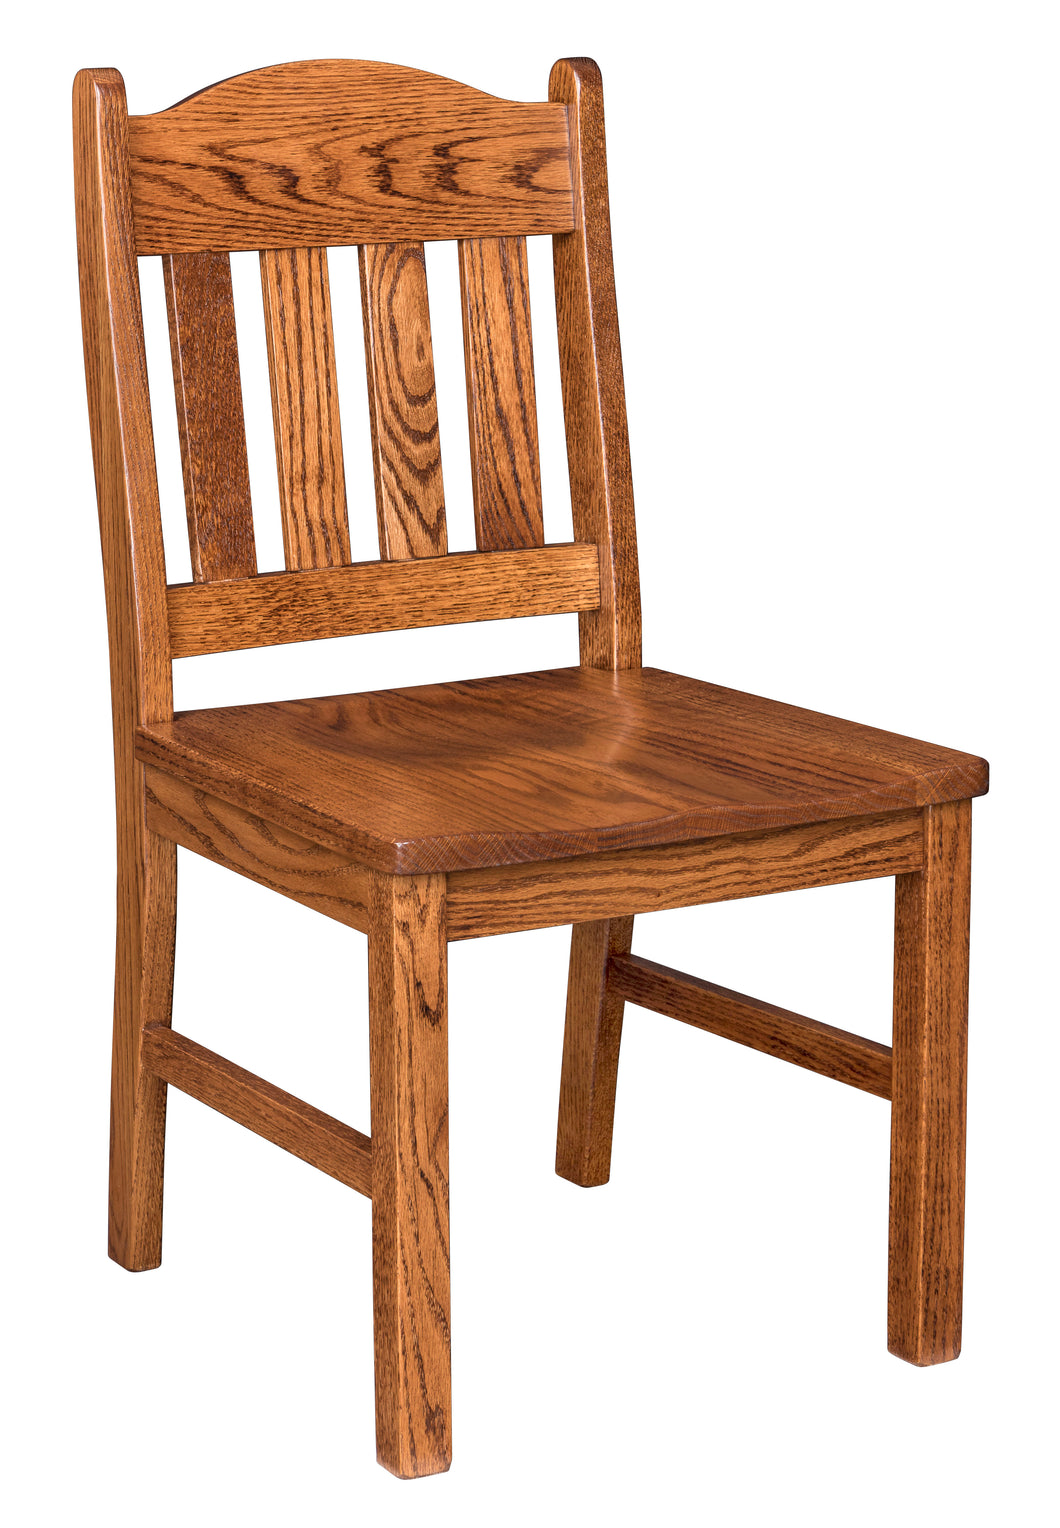 Adams Chair